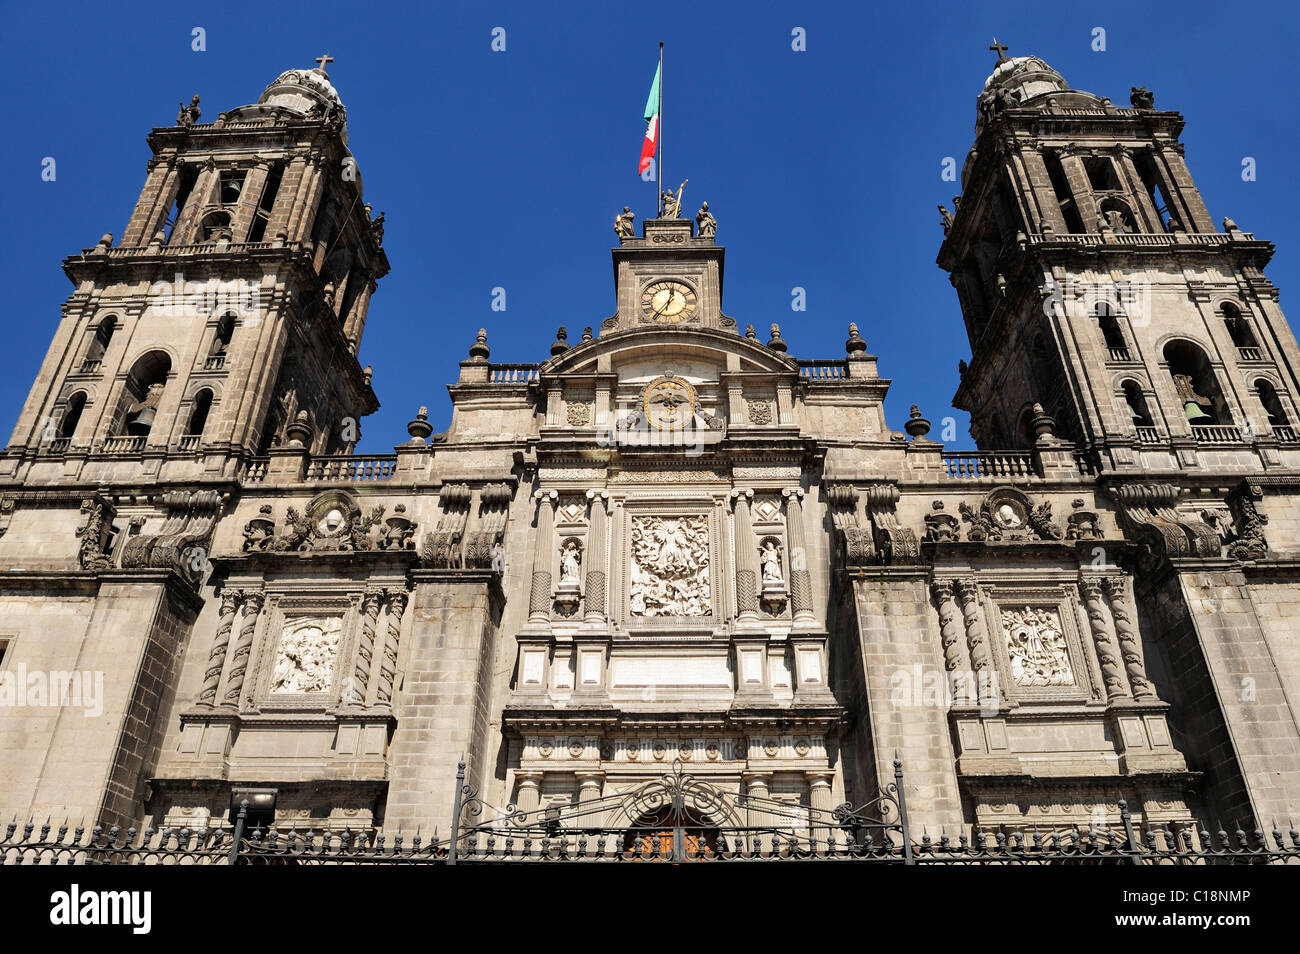 Facade of Catedral Metropolitana in Zocalo District, Mexico City, Mexico Stock Photo